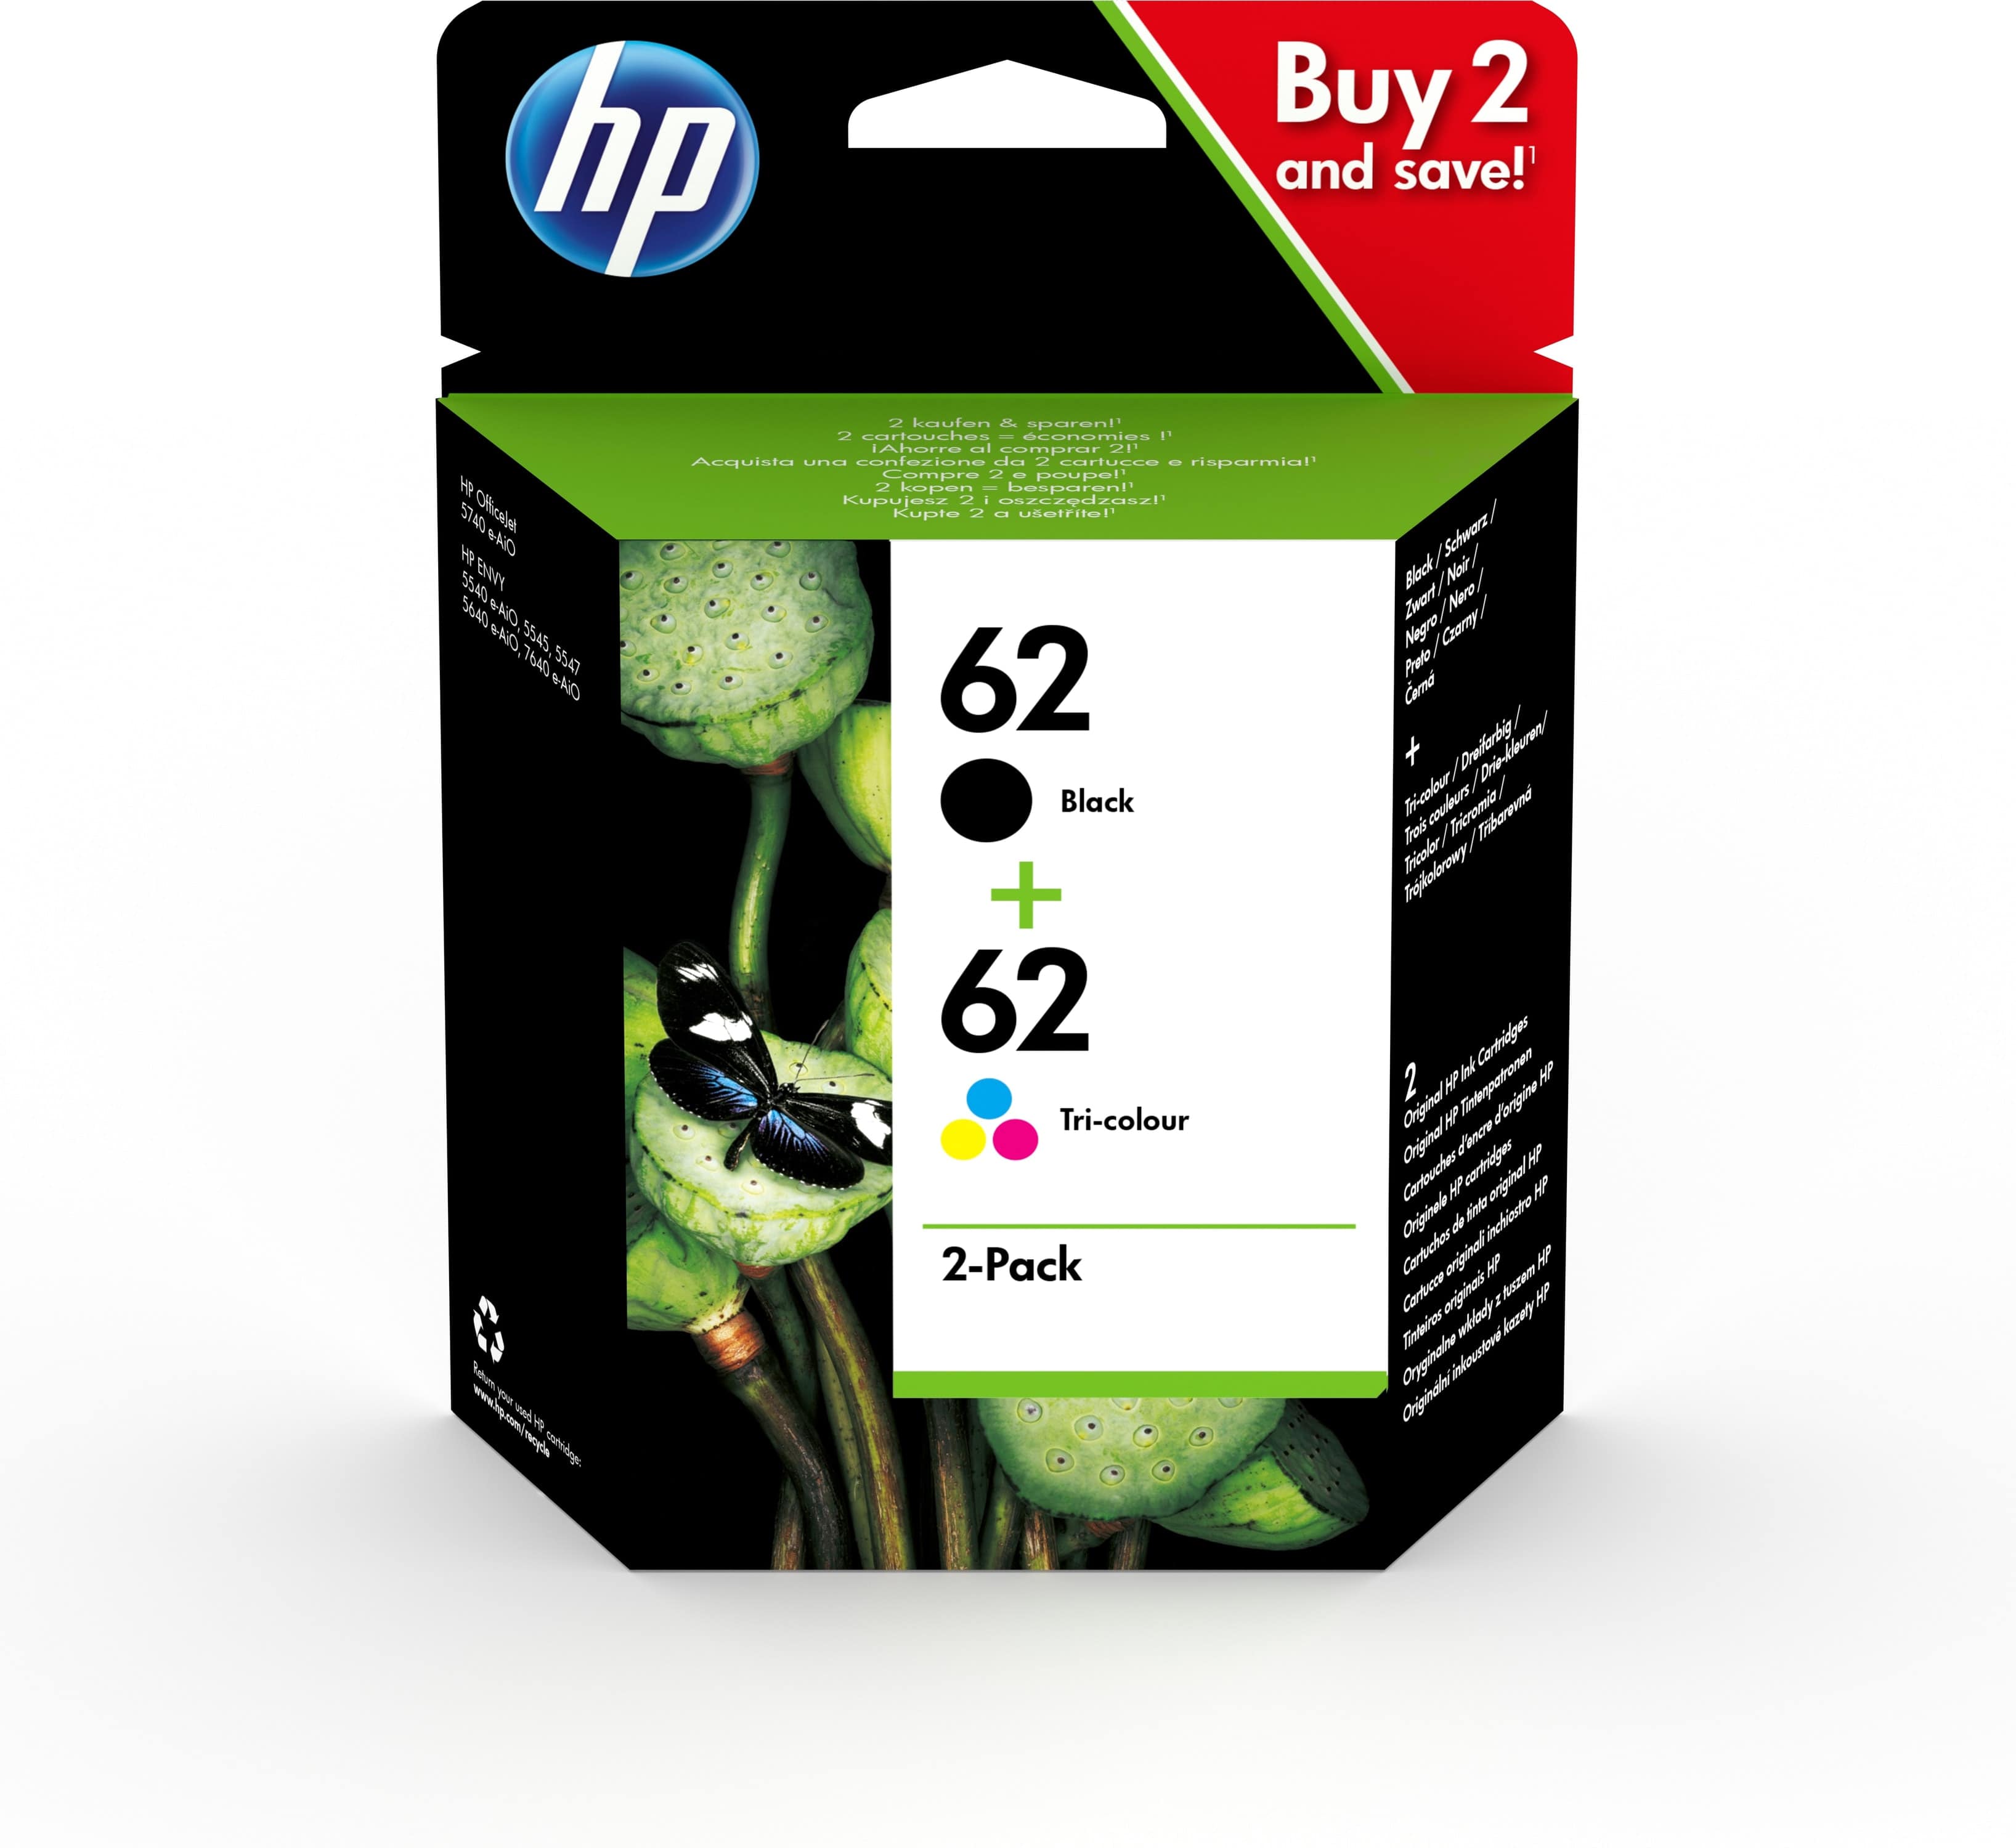 HP Tintenpatronen HP62, 4 farben, Black, Color (C/M/Y)